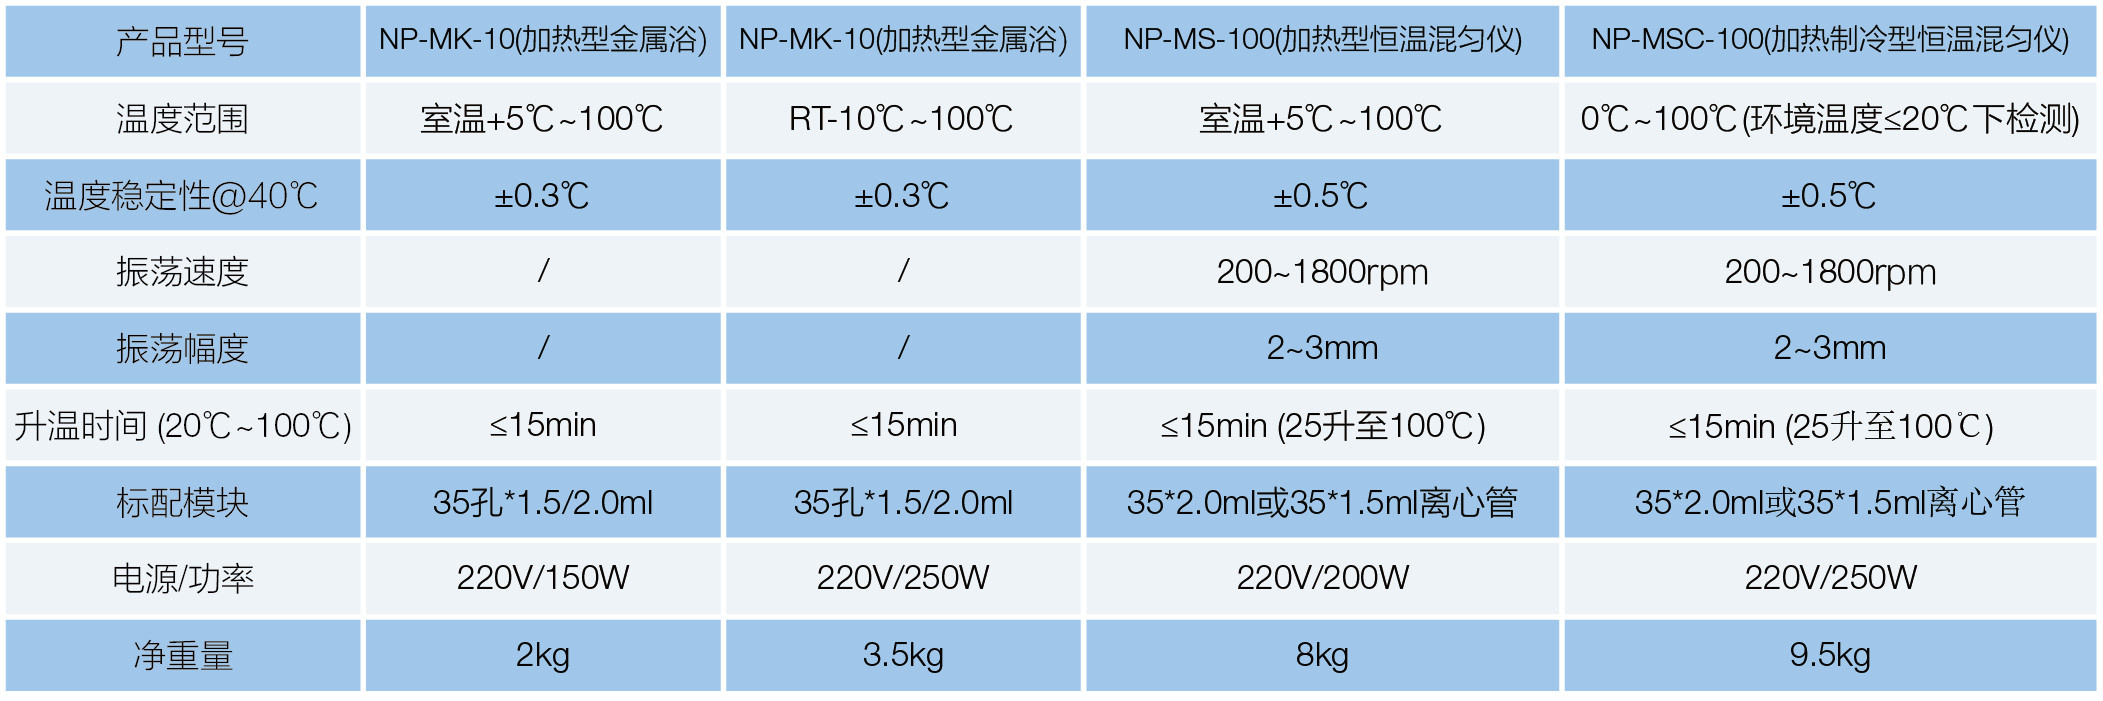 NP-MK-10(加热型金属浴）(图1)